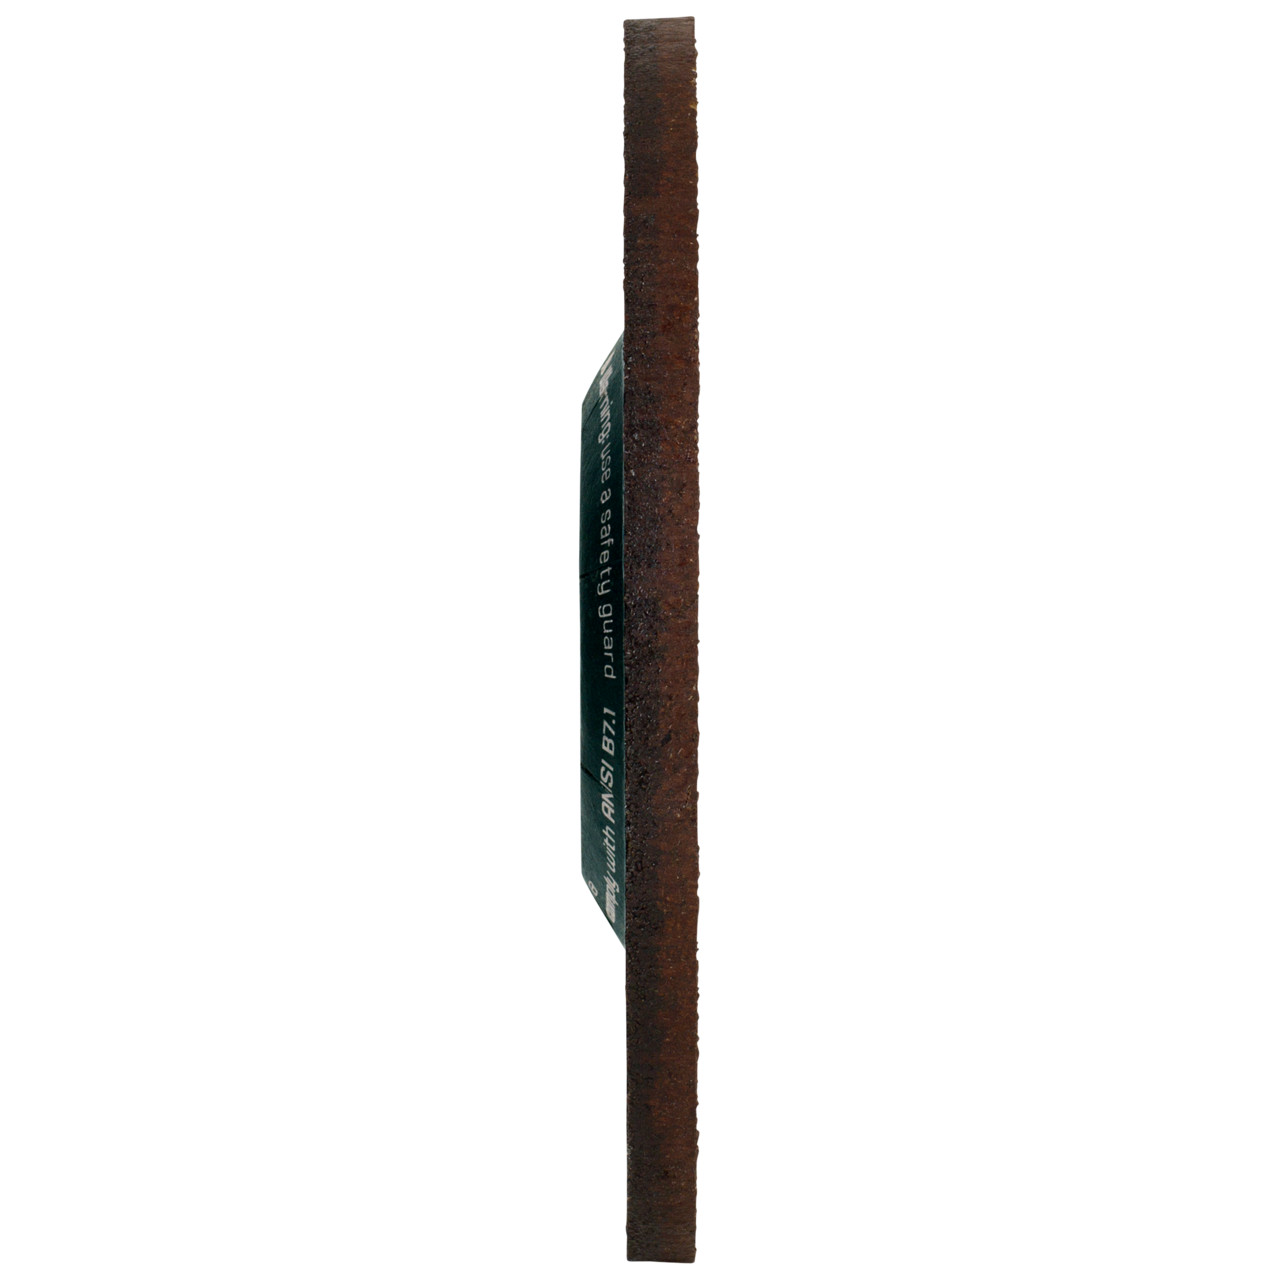 Tyrolit Voorslijpschijf DxUxH 125x4x22,23 CERABOND X voor staal en roestvast staal